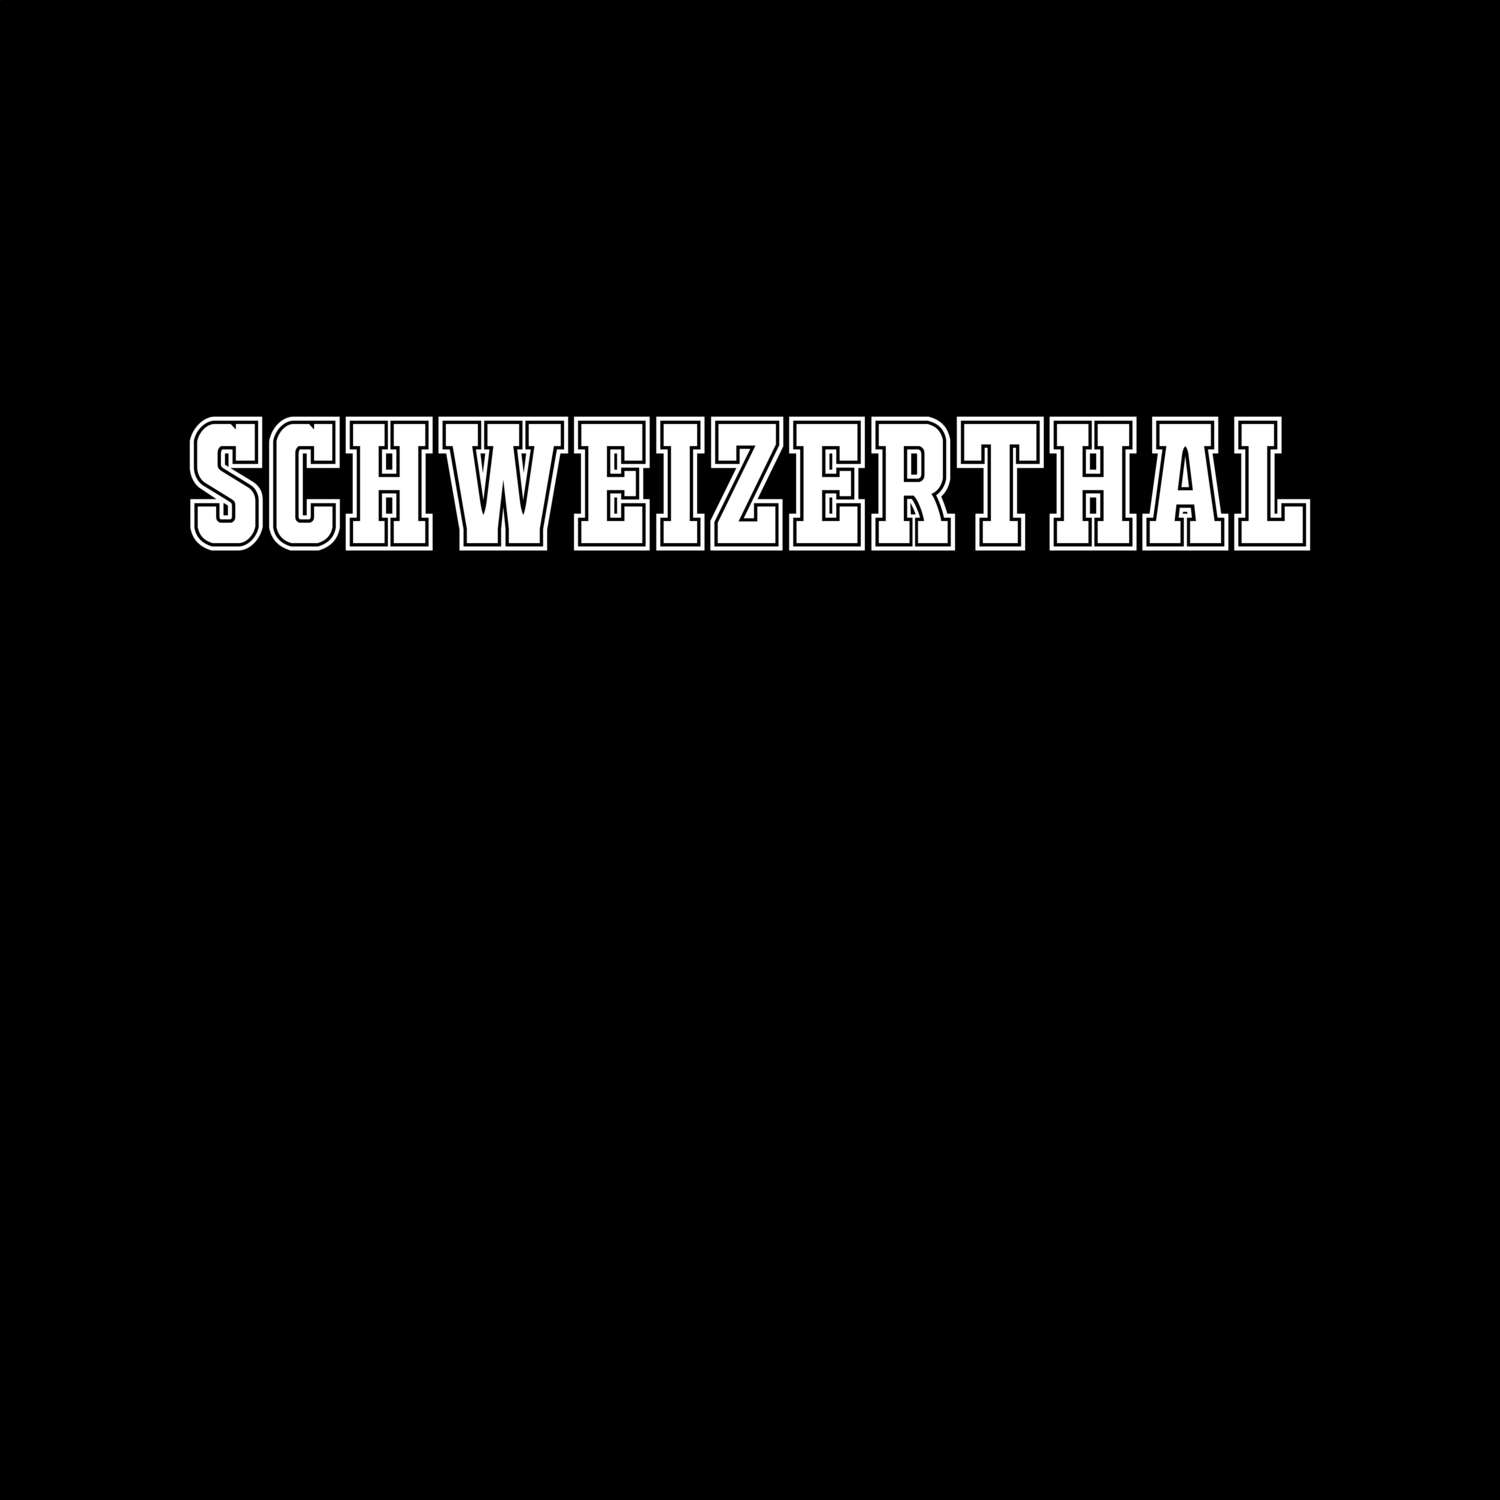 Schweizerthal T-Shirt »Classic«